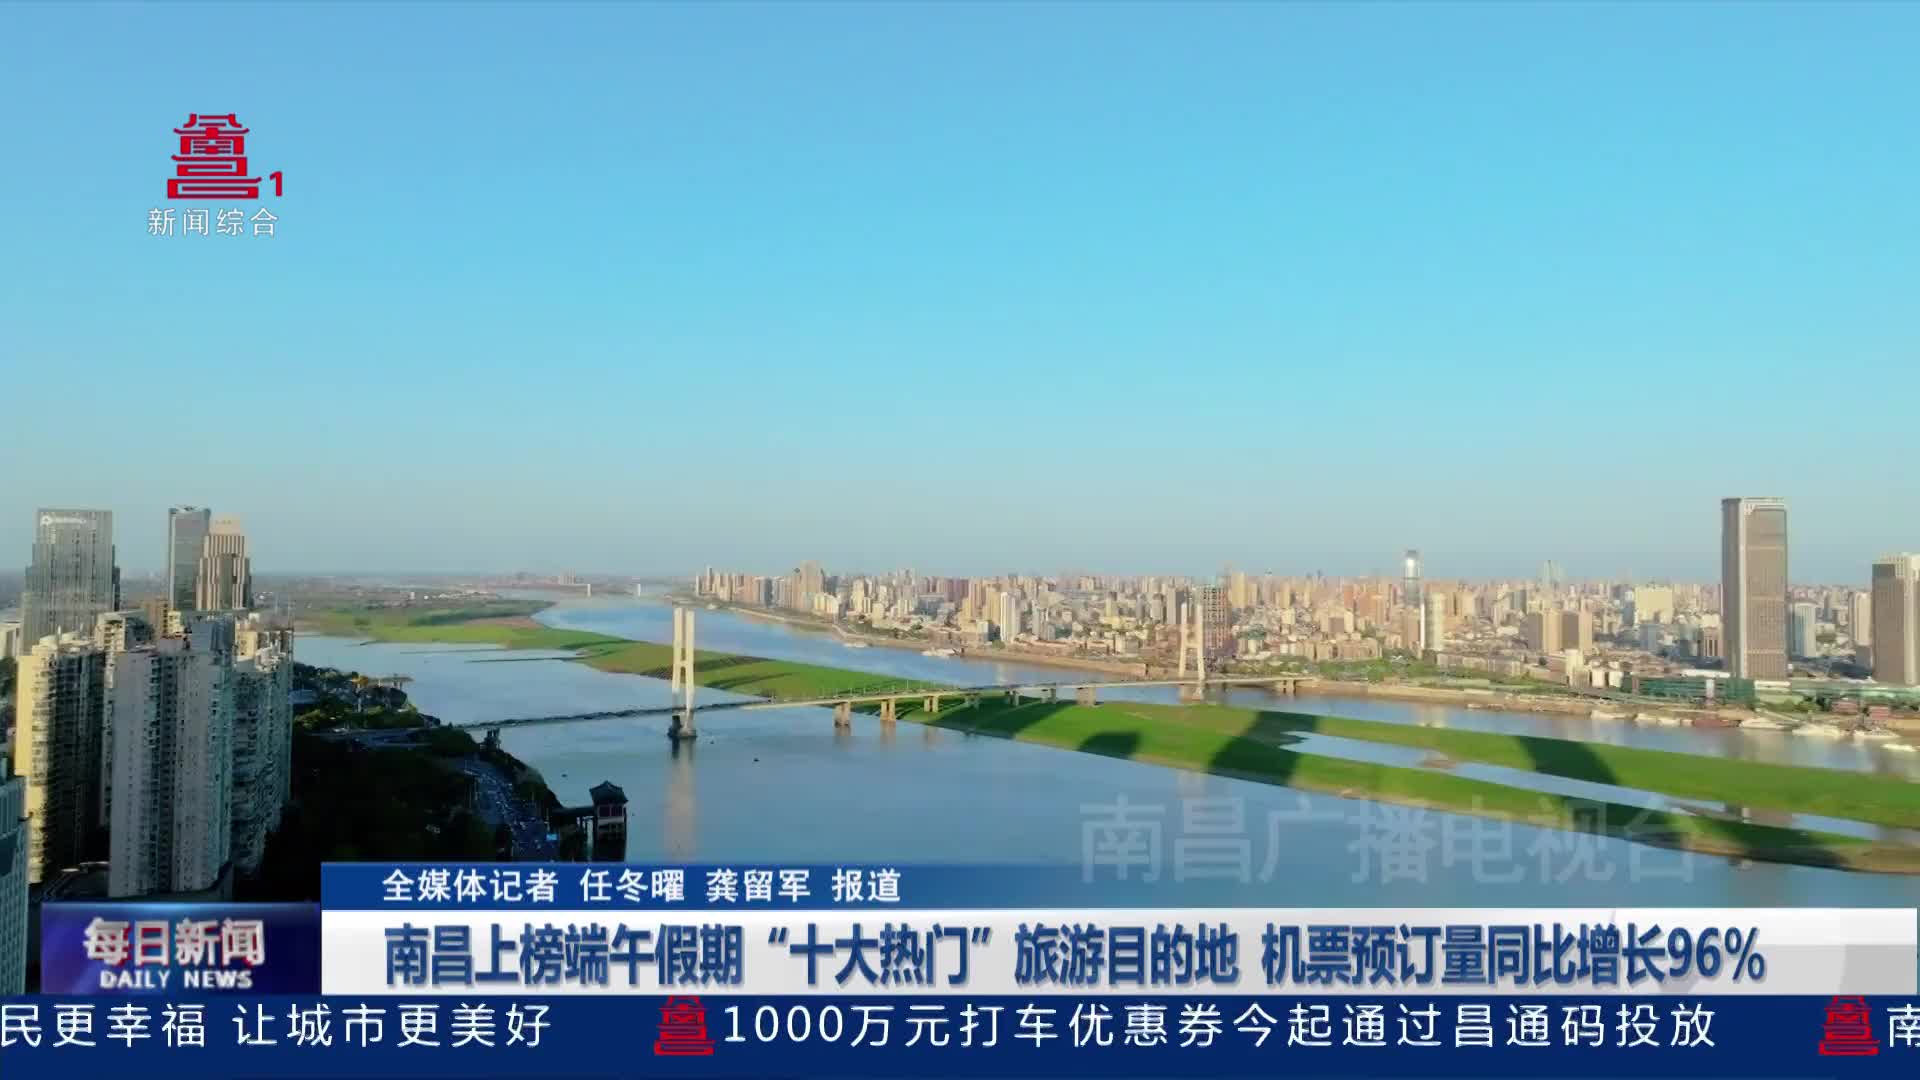 南昌上榜端午假期“十大热门”旅游目的地  机票预订量同比增长96%